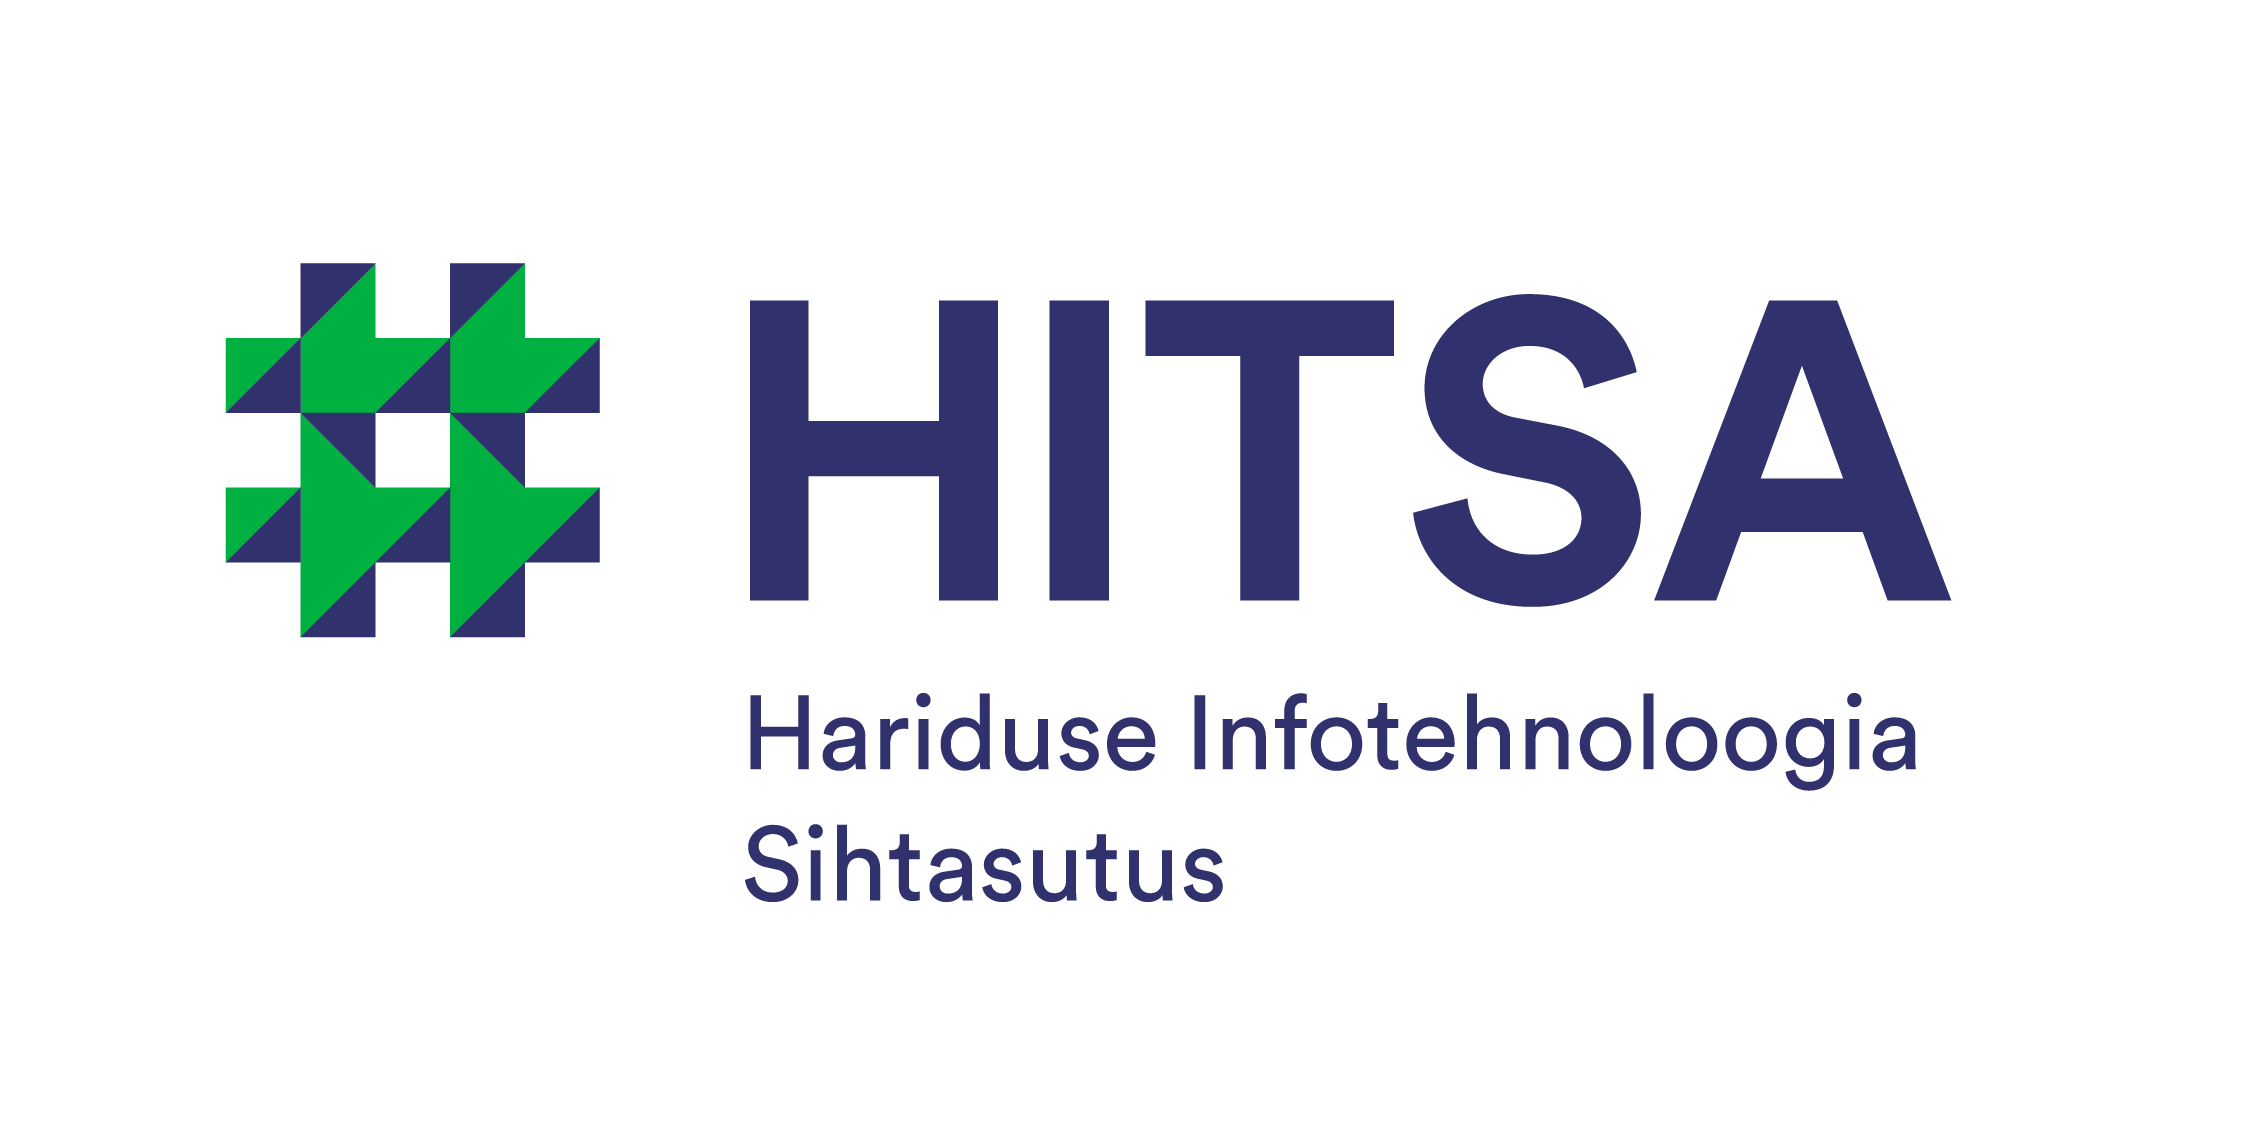 Hitsa logo